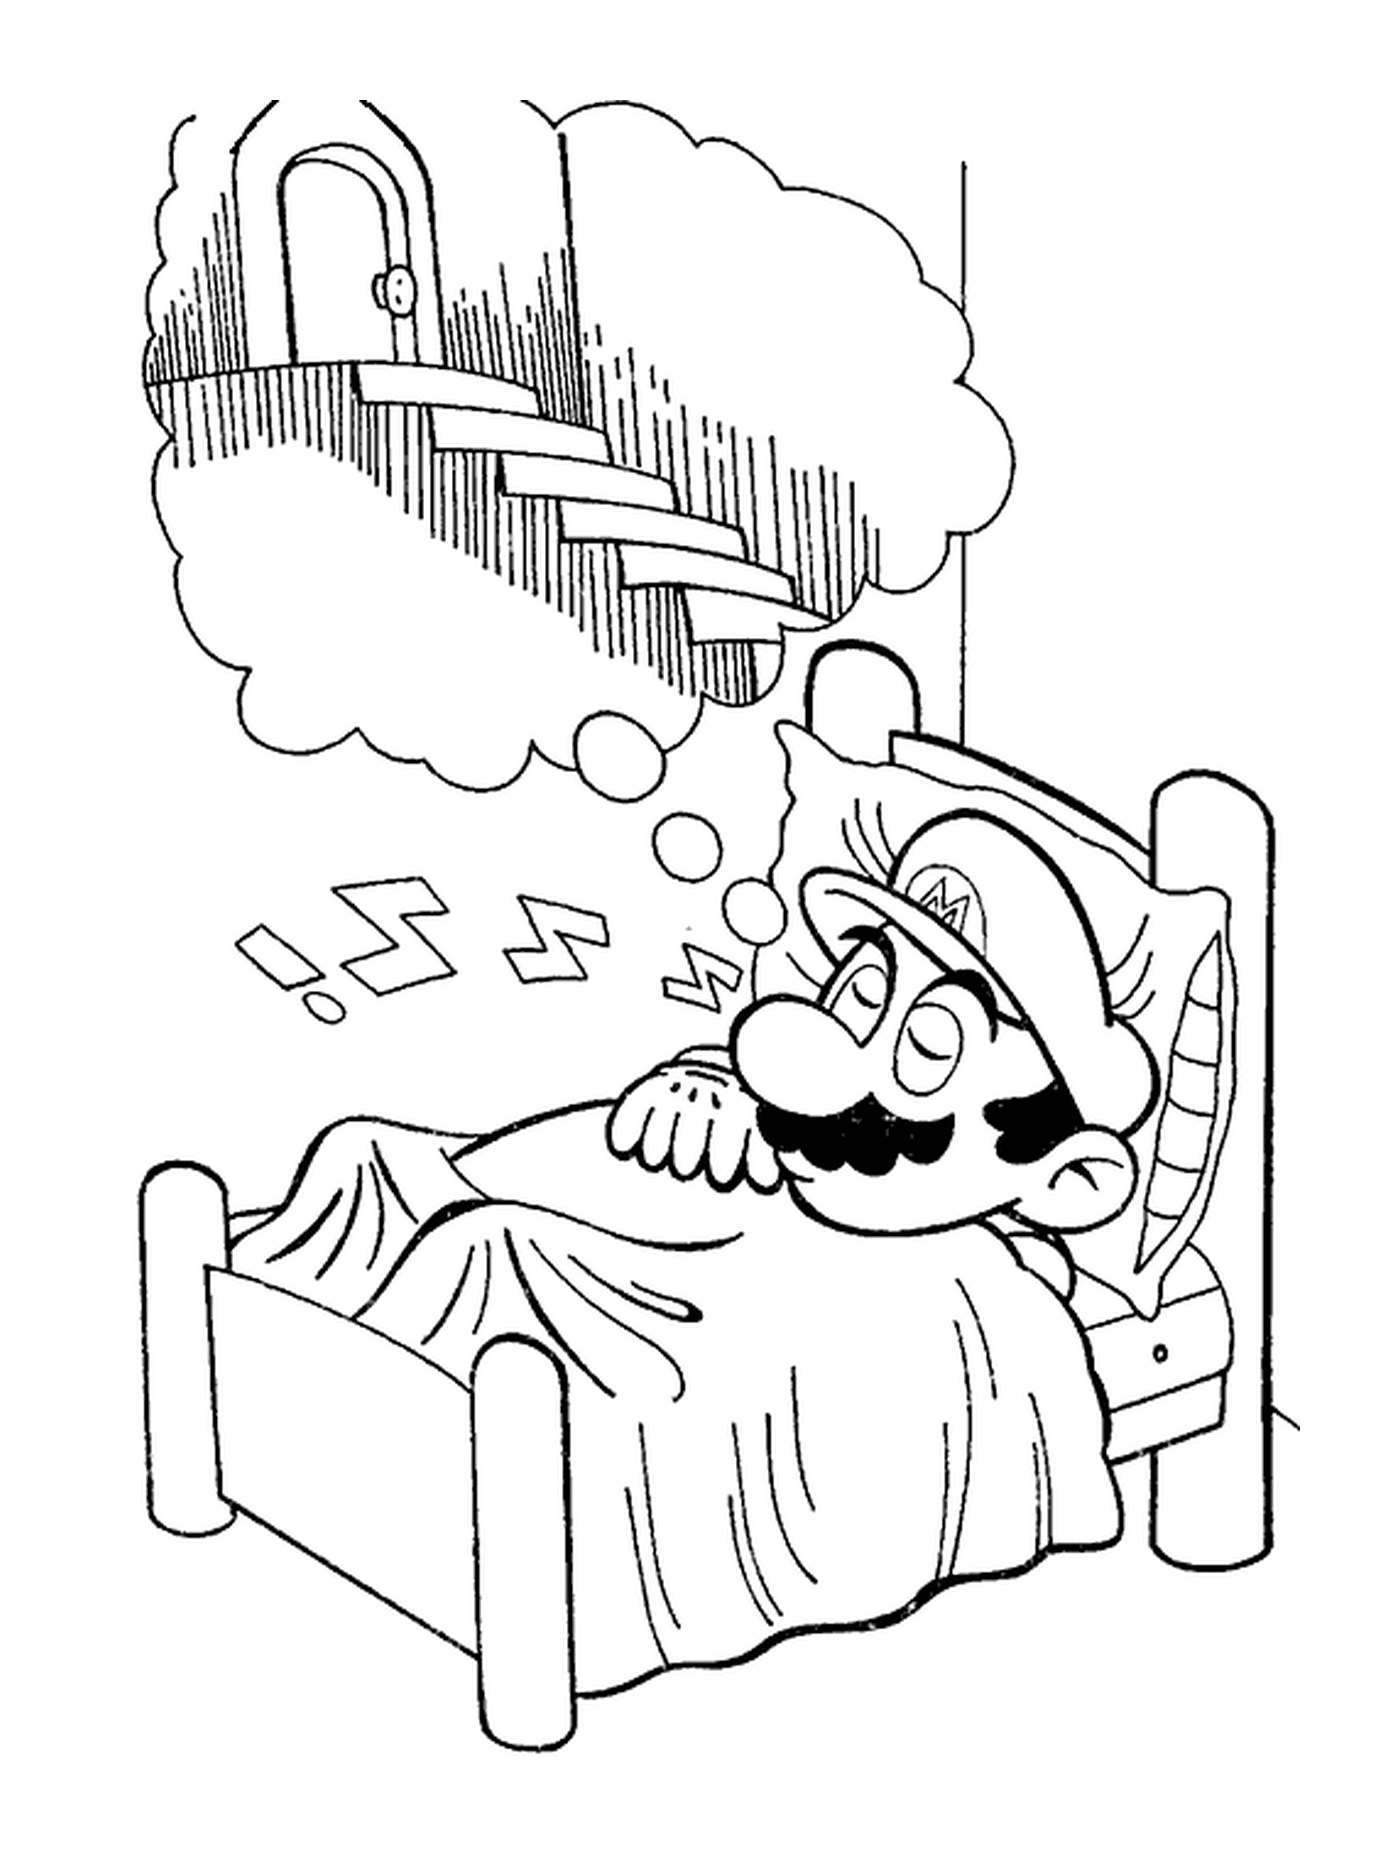  Марио мечтает мирно 